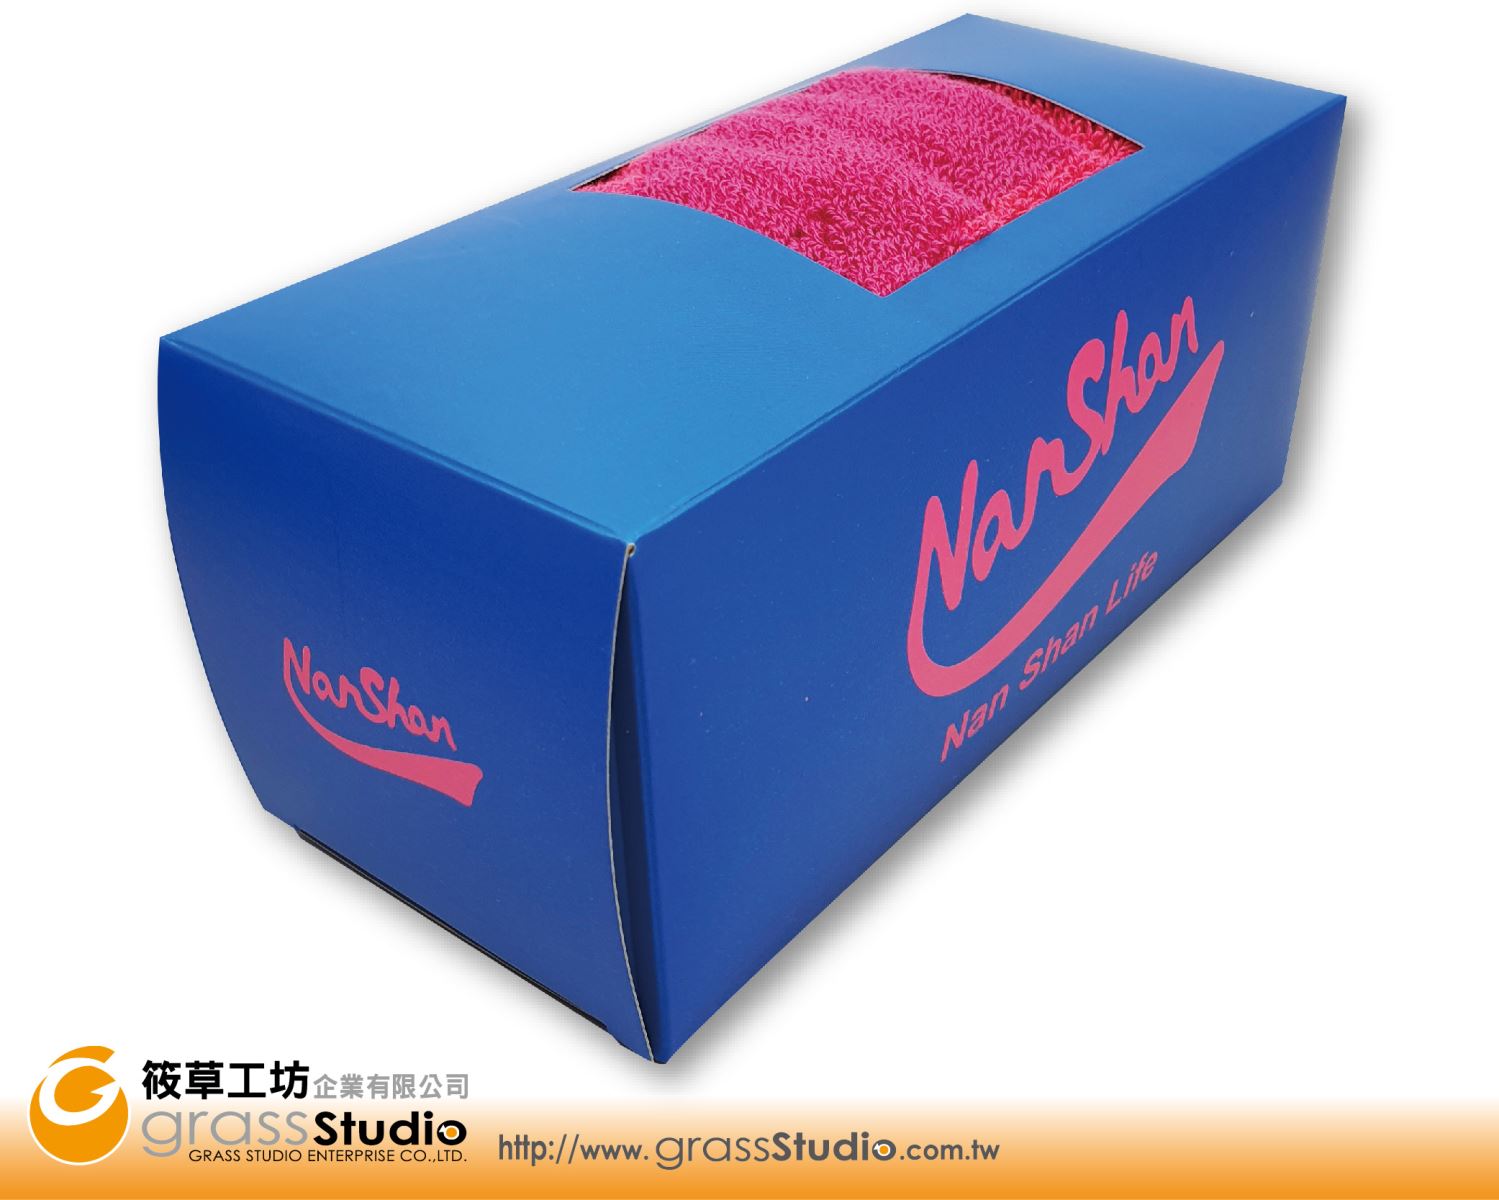 Nansan-運動毛巾外盒